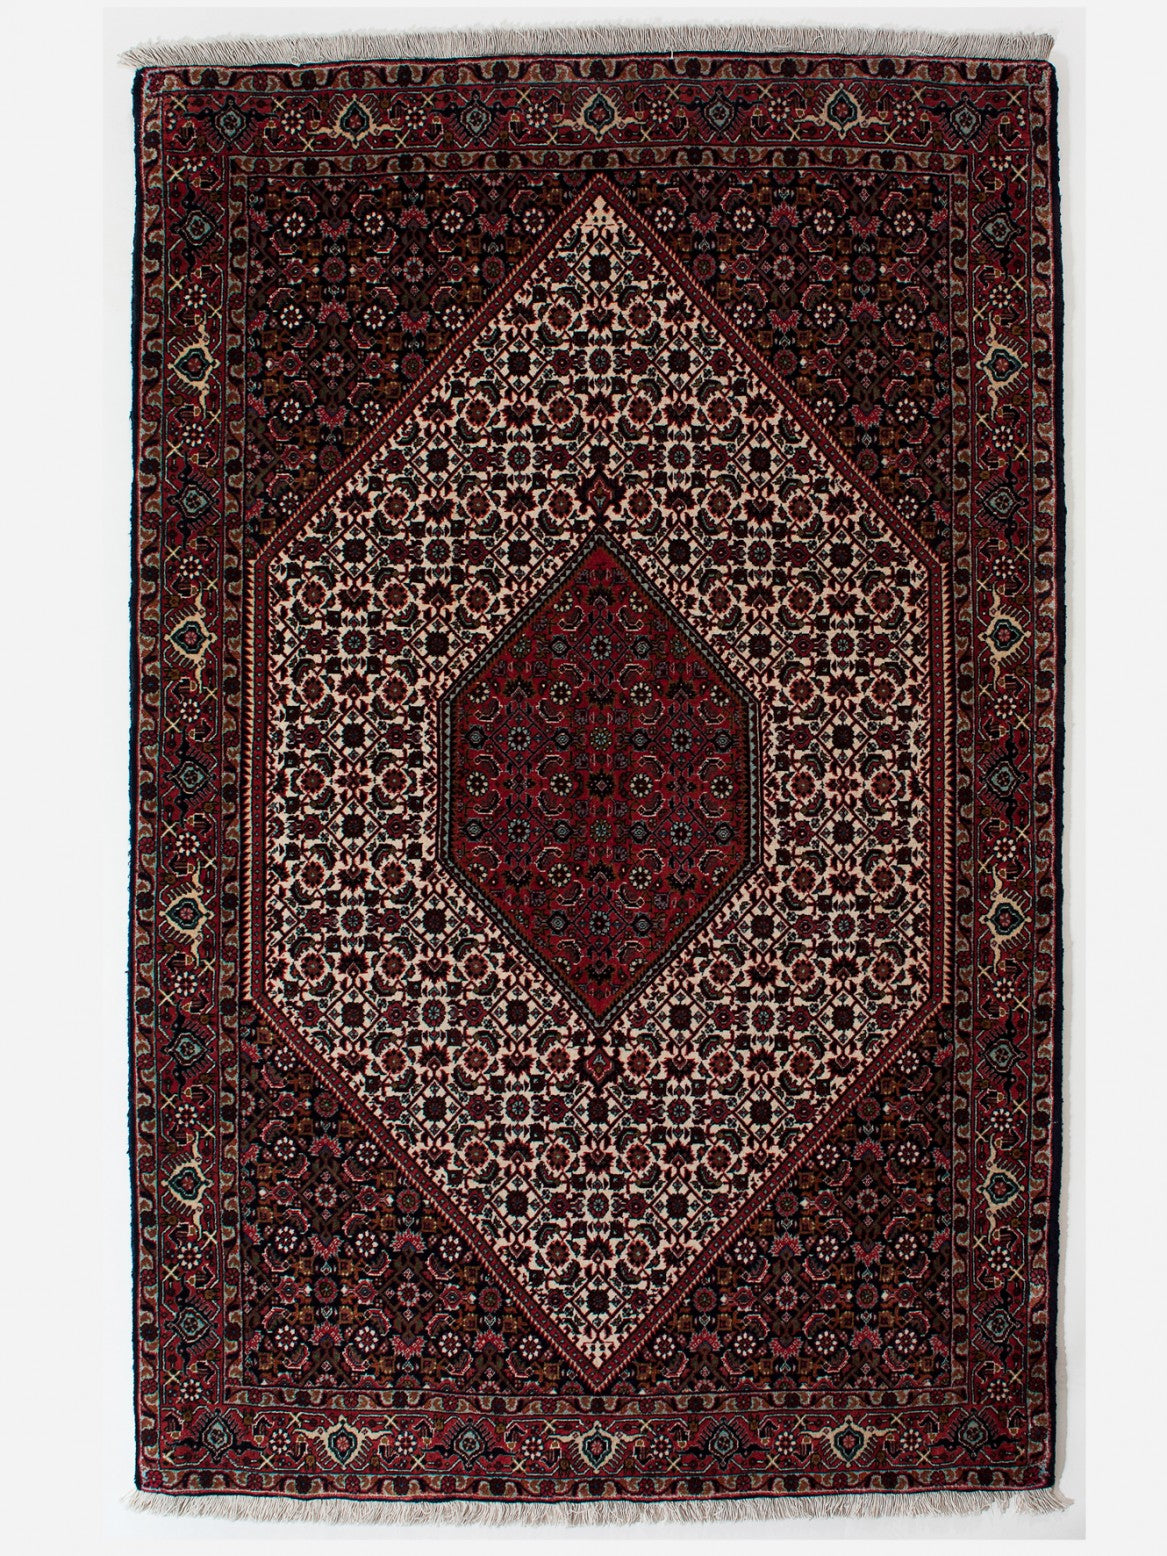 BIDJAR IRAN 178 x 113 cm